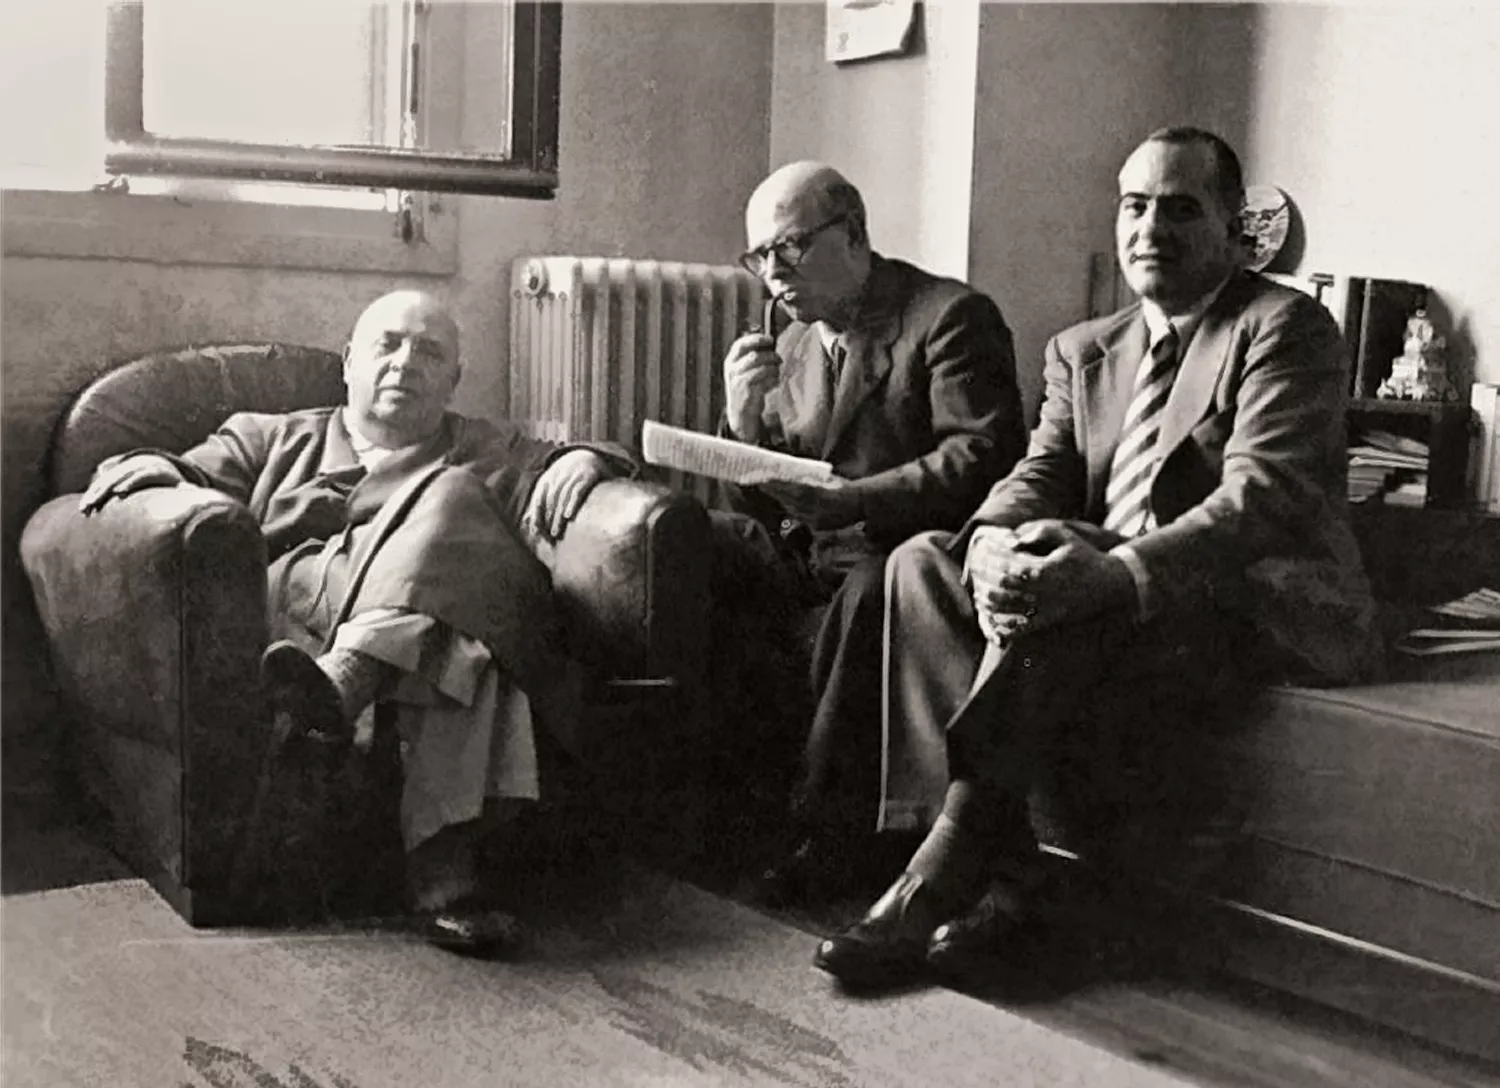 D’esquerra a dreta, l’exministre Indalecio Prieto, Pau Casals i Josep Tarradellas, en una reunió a Saint Jean de Luz l’any 1956